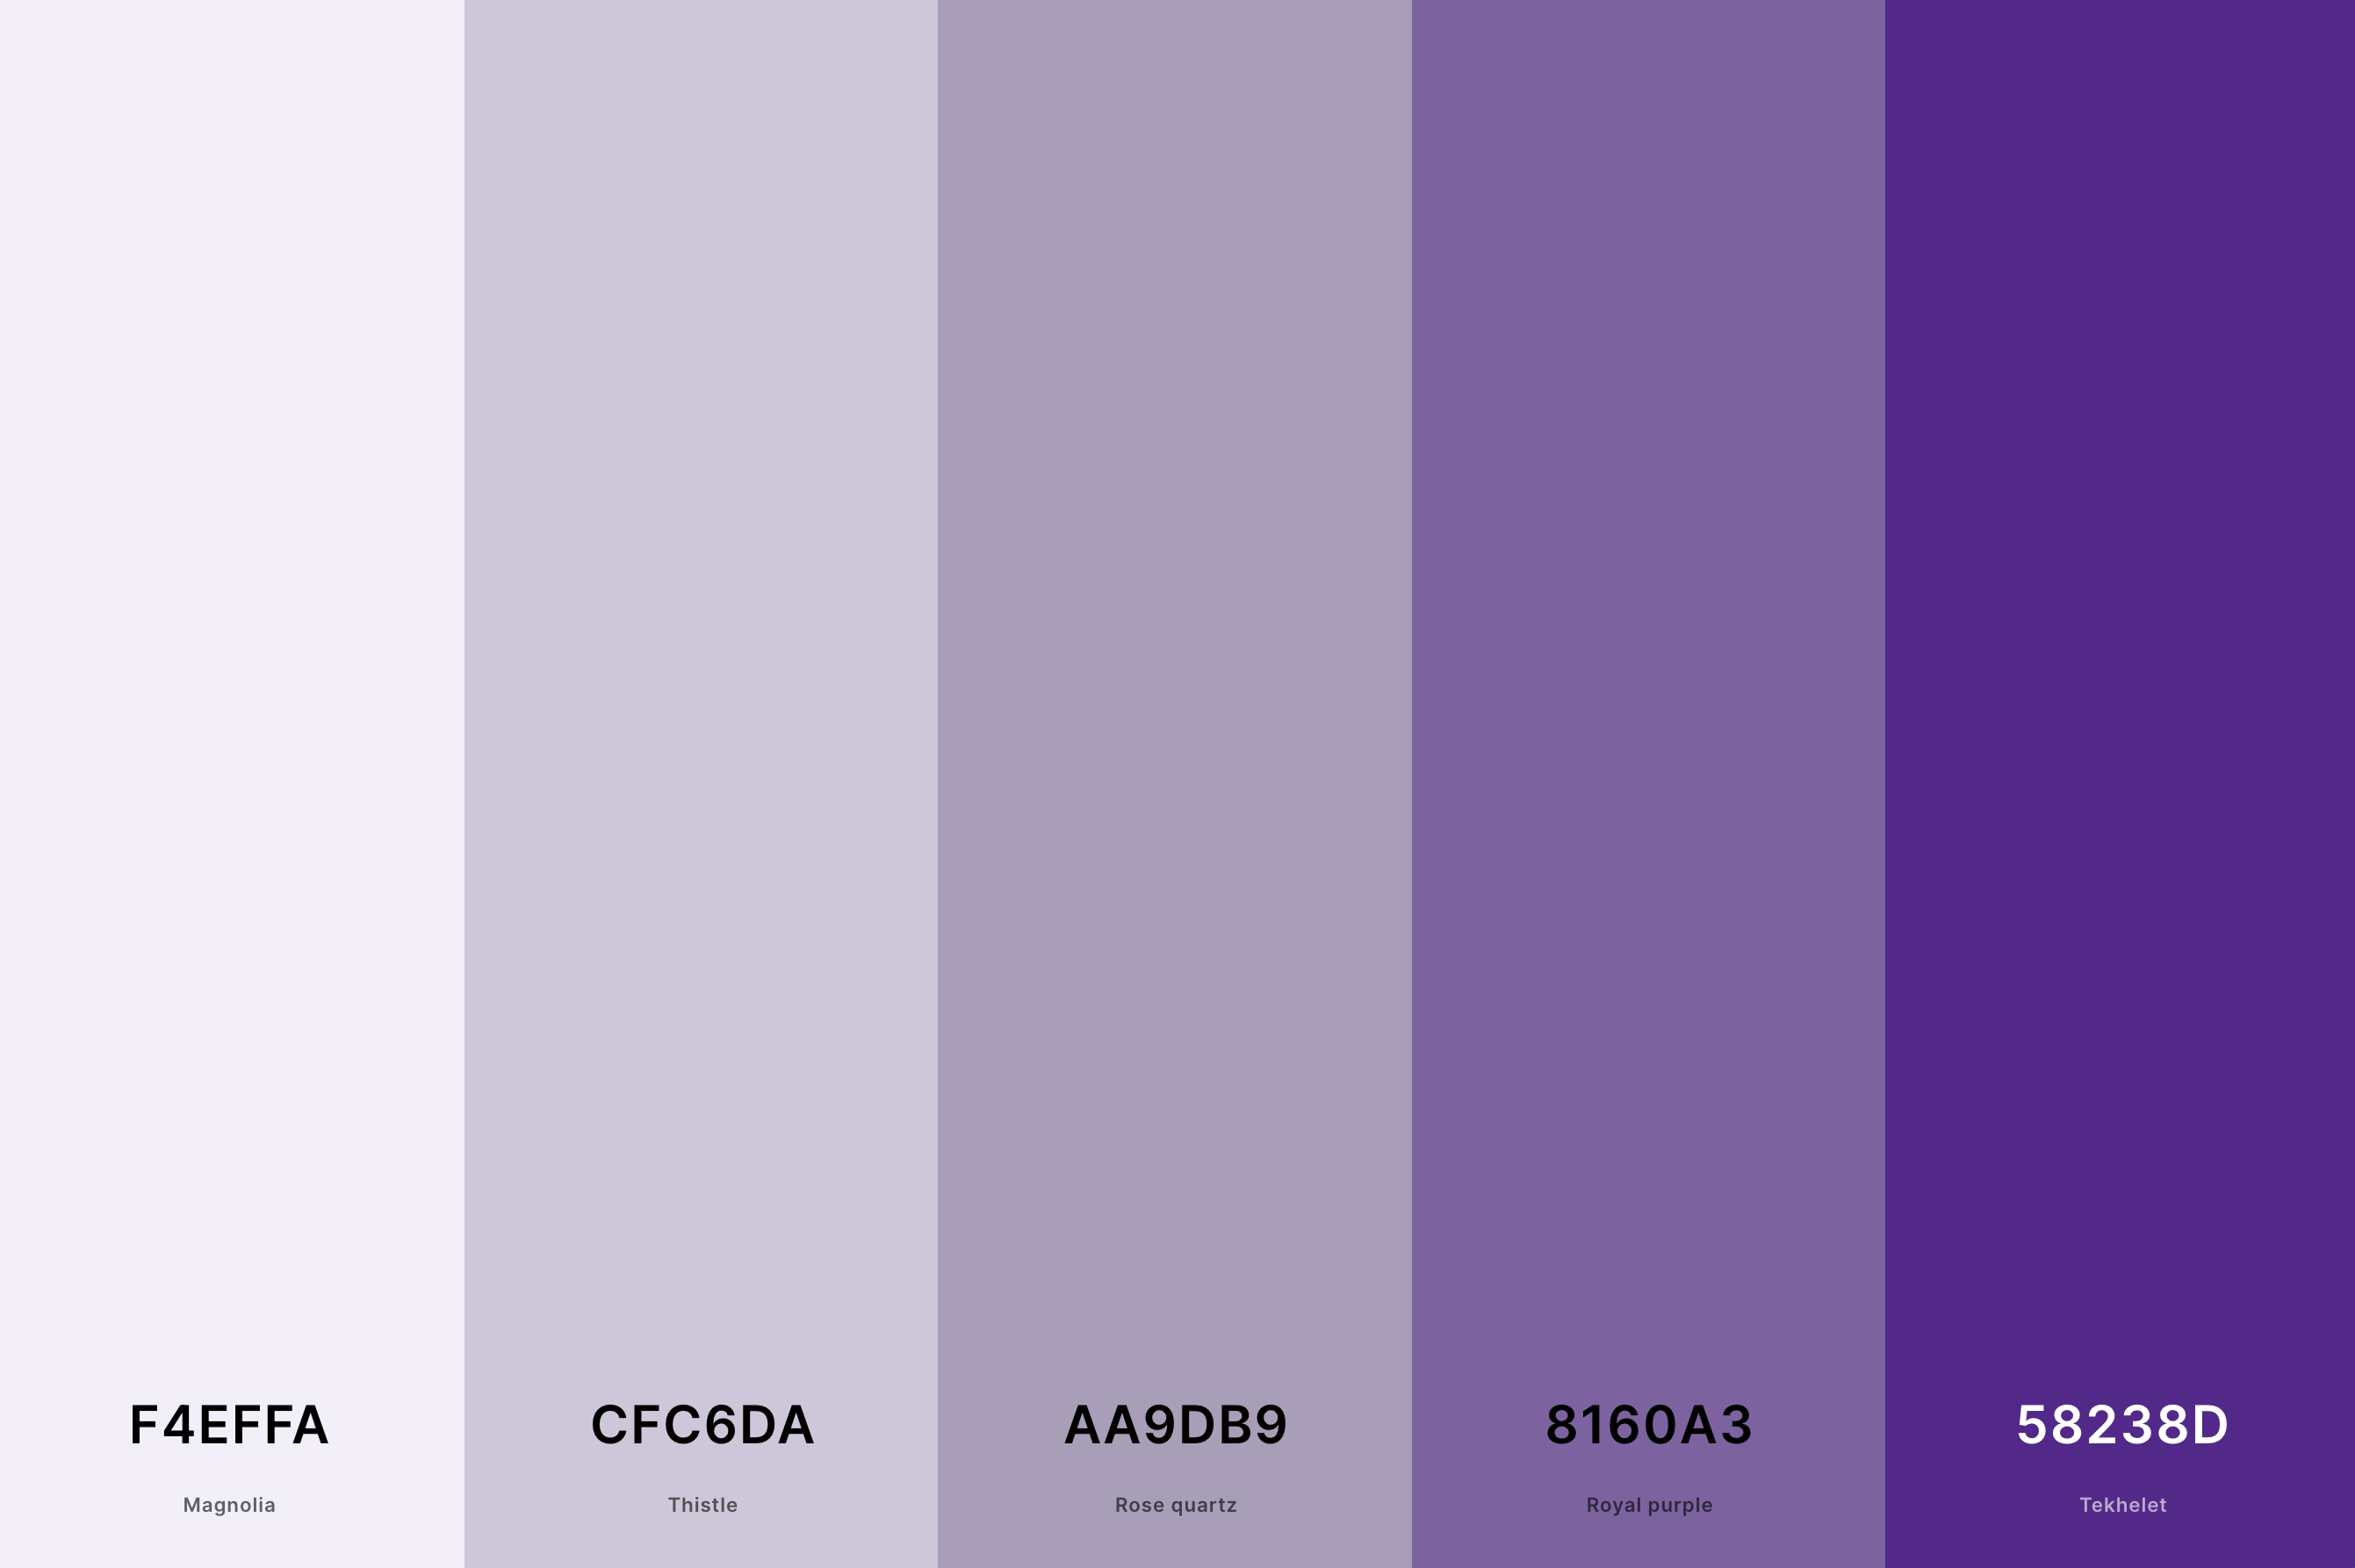 16. Violet And Gray Color Palette Color Palette with Magnolia (Hex #F4EFFA) + Thistle (Hex #CFC6DA) + Rose Quartz (Hex #AA9DB9) + Royal Purple (Hex #8160A3) + Tekhelet (Hex #58238D) Color Palette with Hex Codes